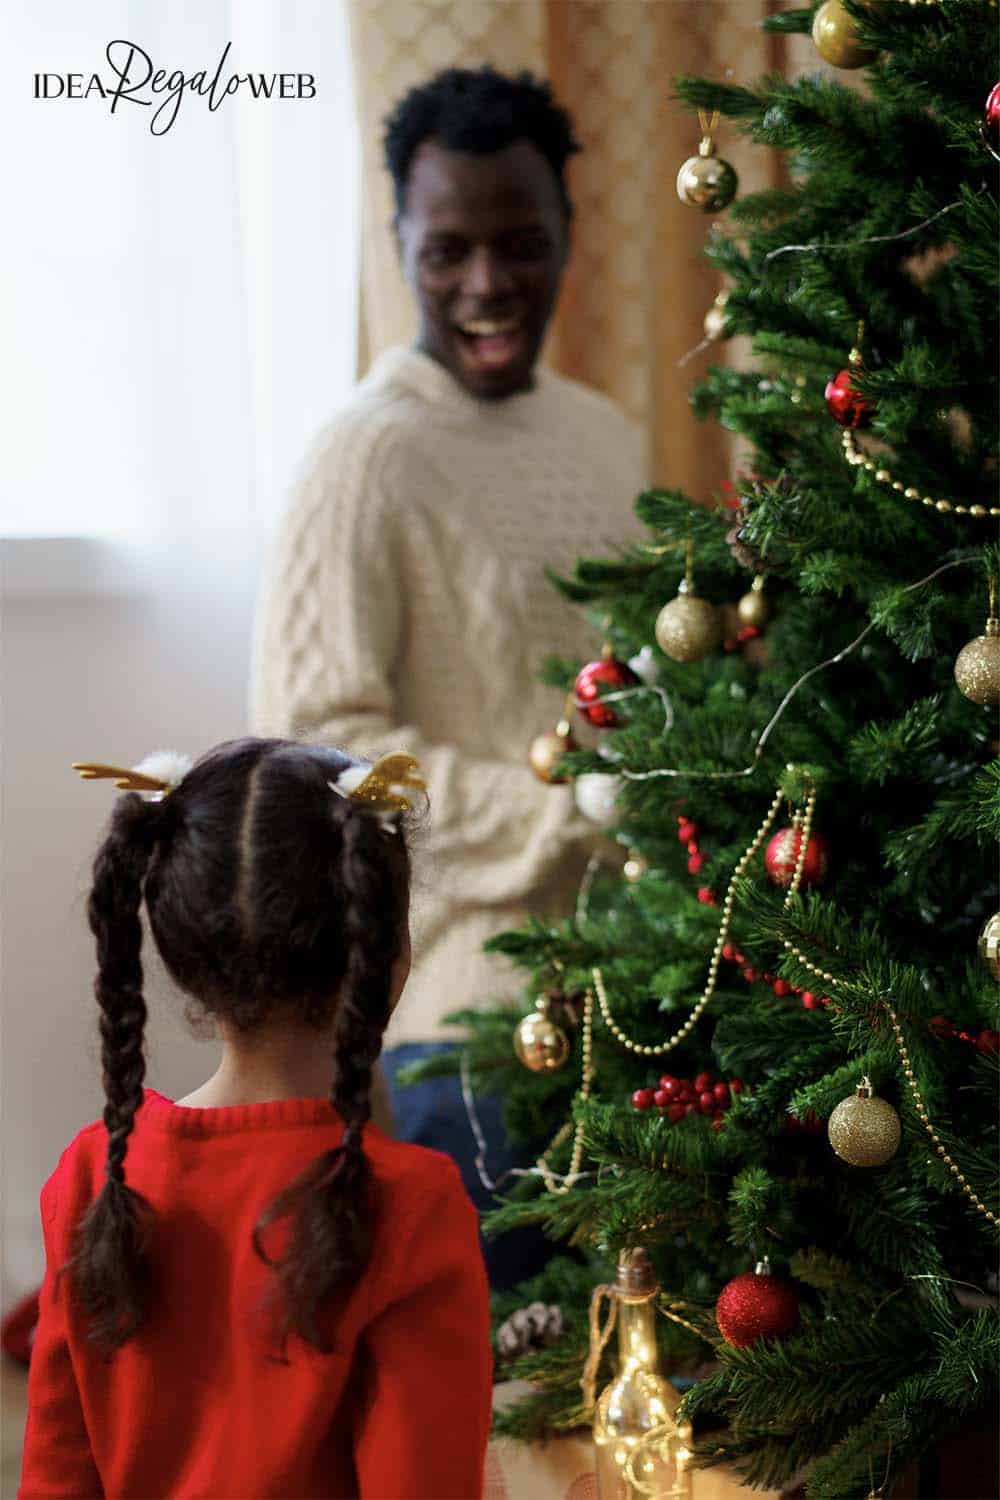 Regali di Natale per Papà - copertina - 1000x1500 idearegaloweb